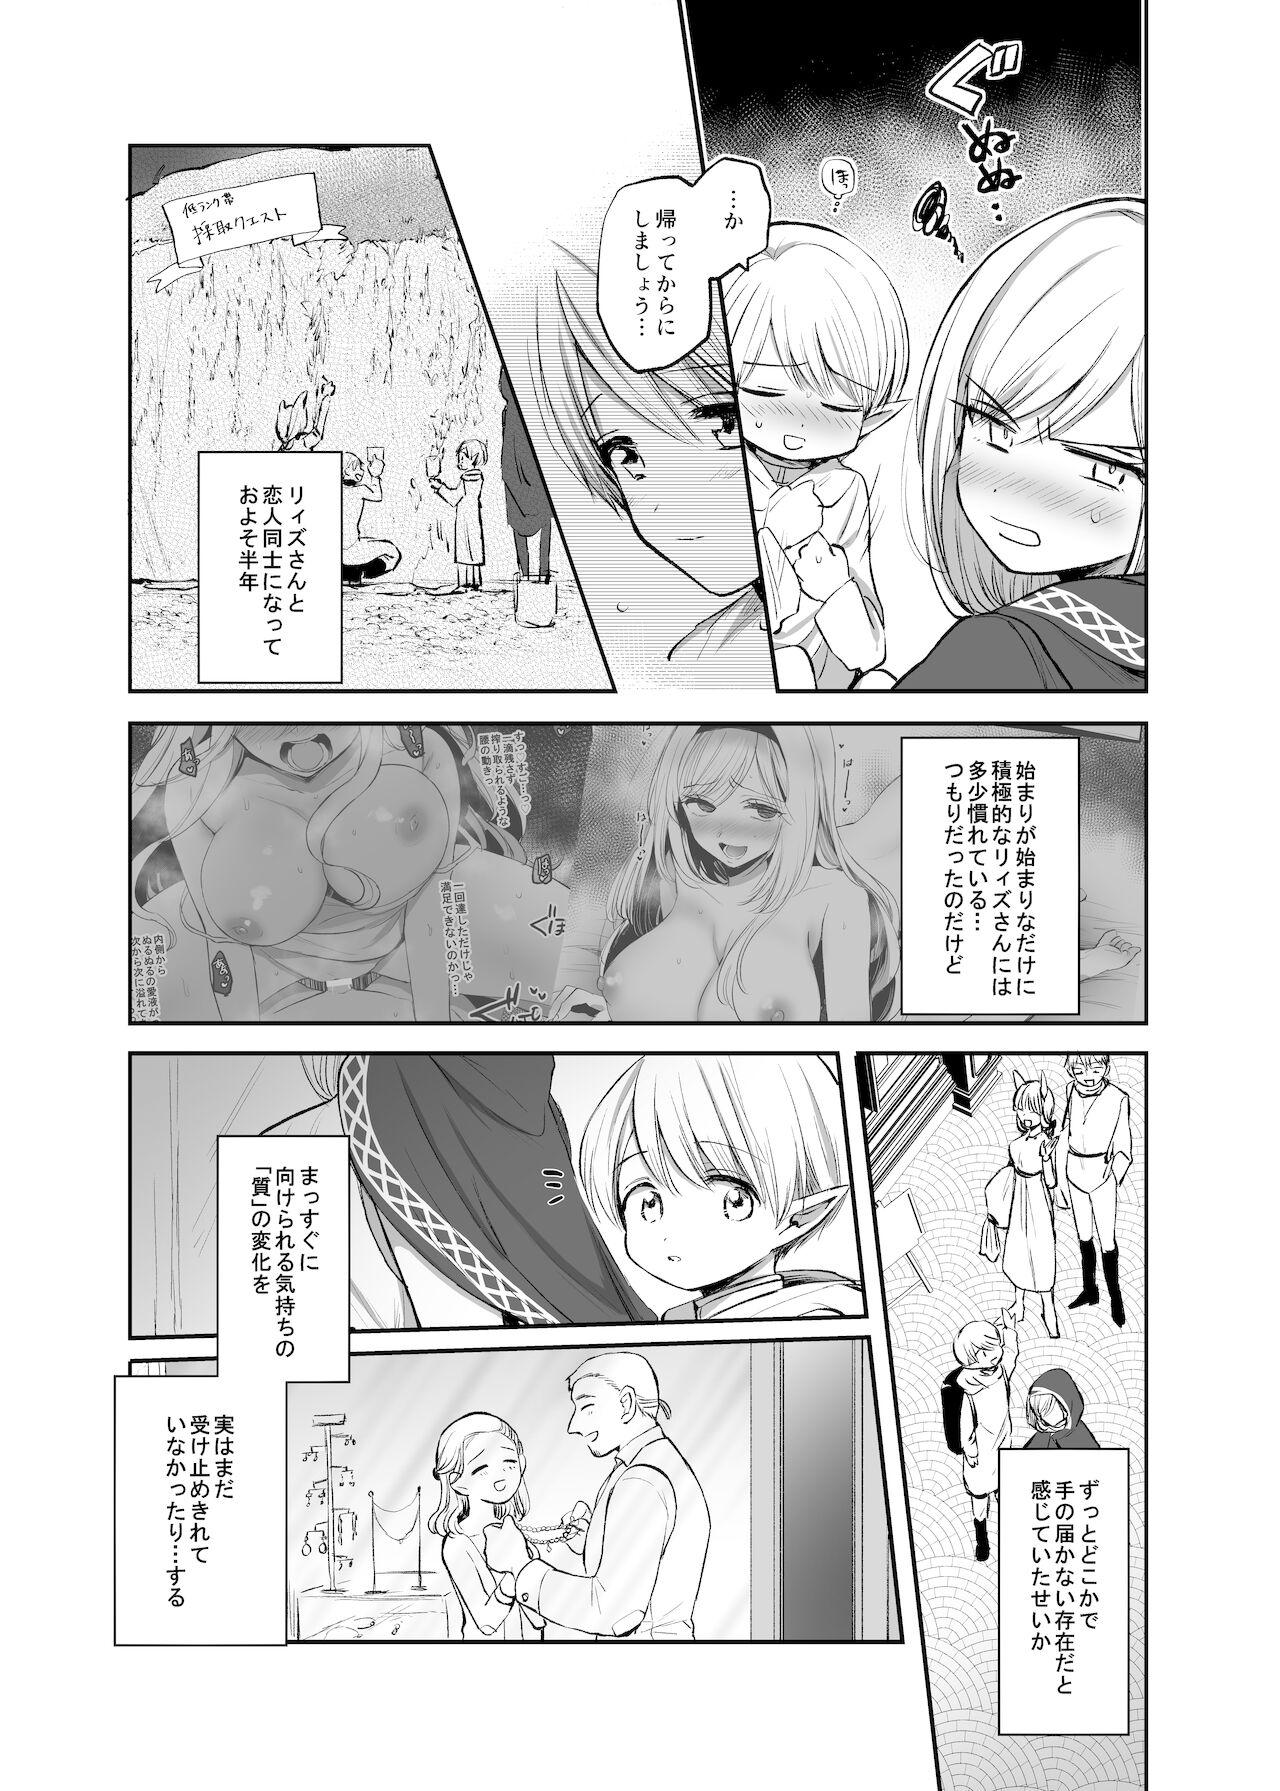 Insertion 嫌われ女を助けたら、ハッピー大団円を迎えた! - Original Cachonda - Page 11